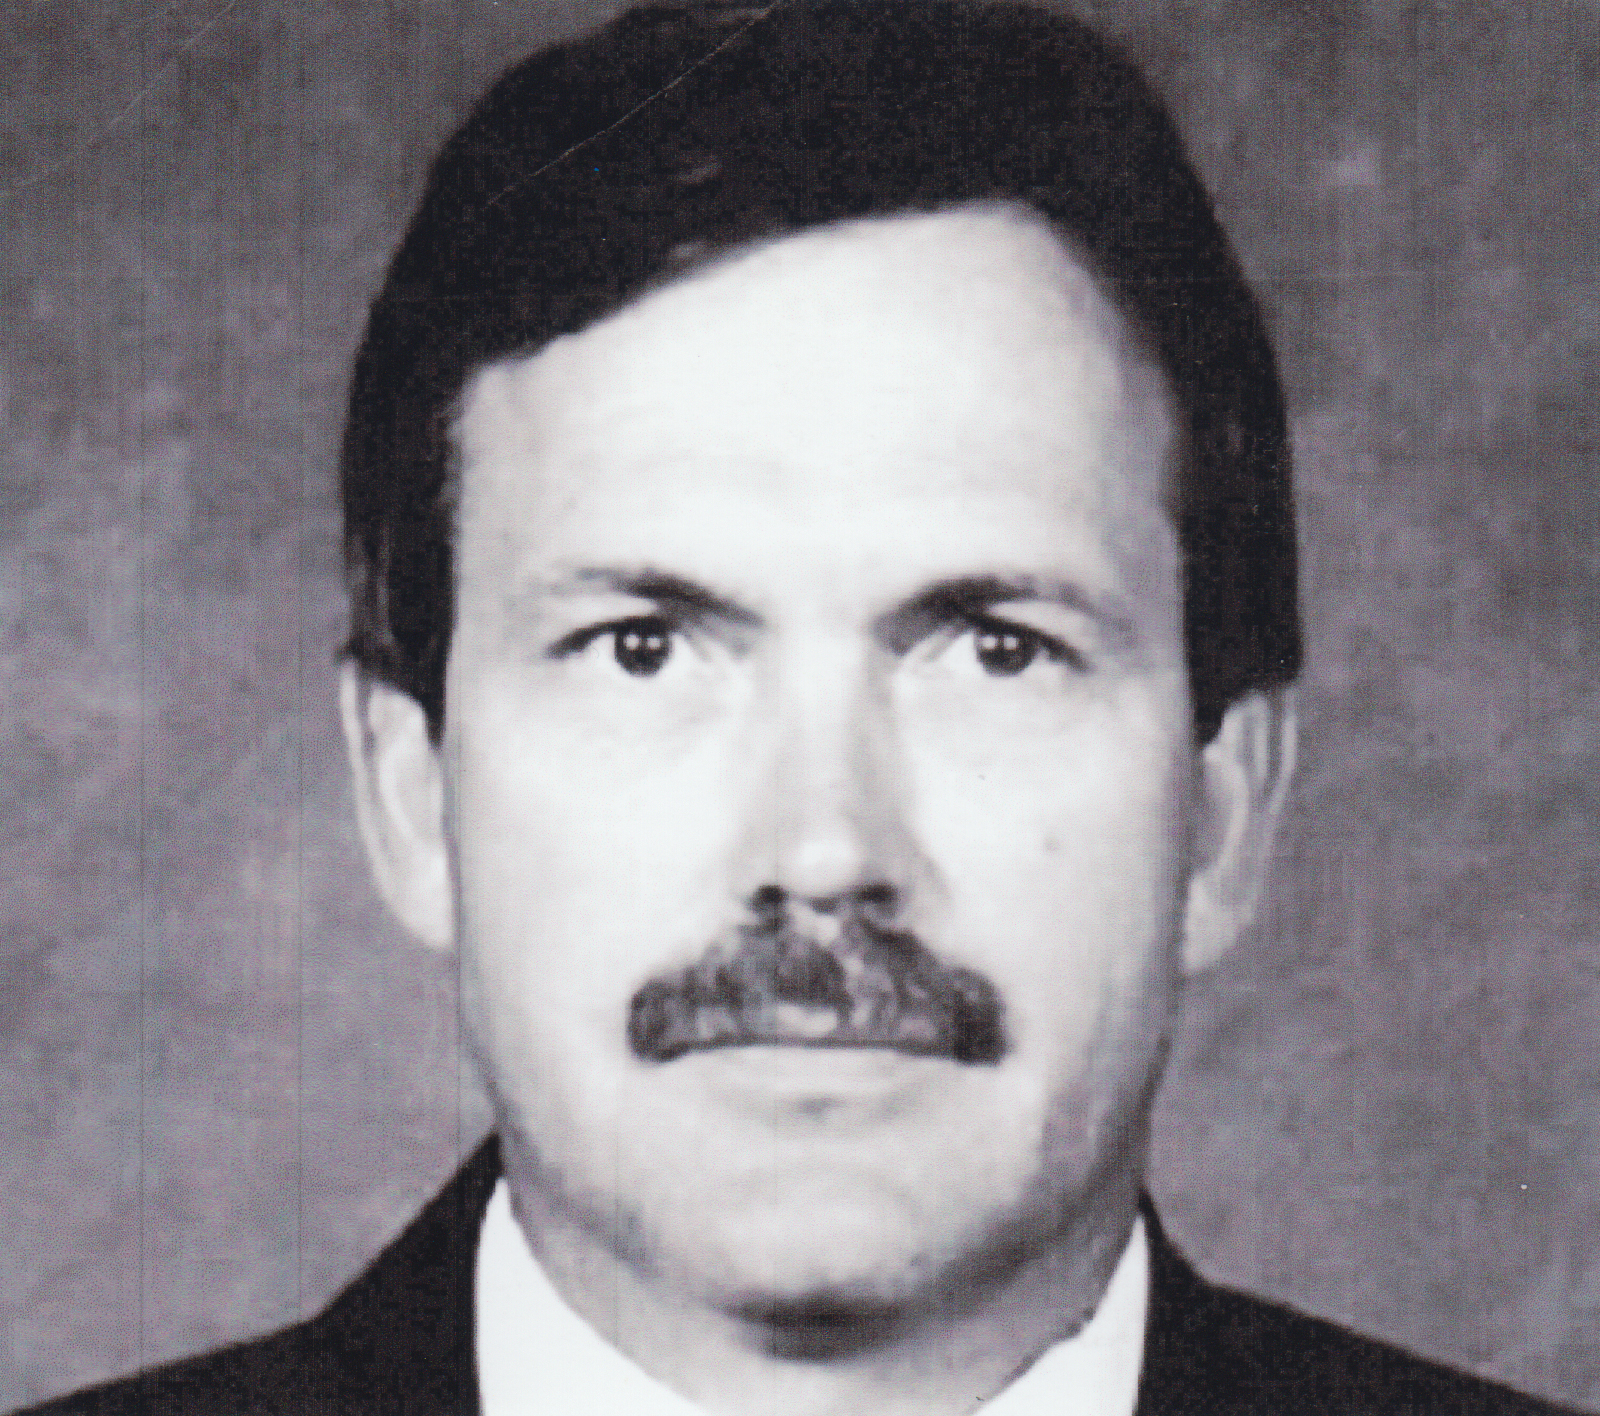 Special Agent Steven W. Harton | Denver and Rio Grande Western Railroad Police Department, Railroad Police